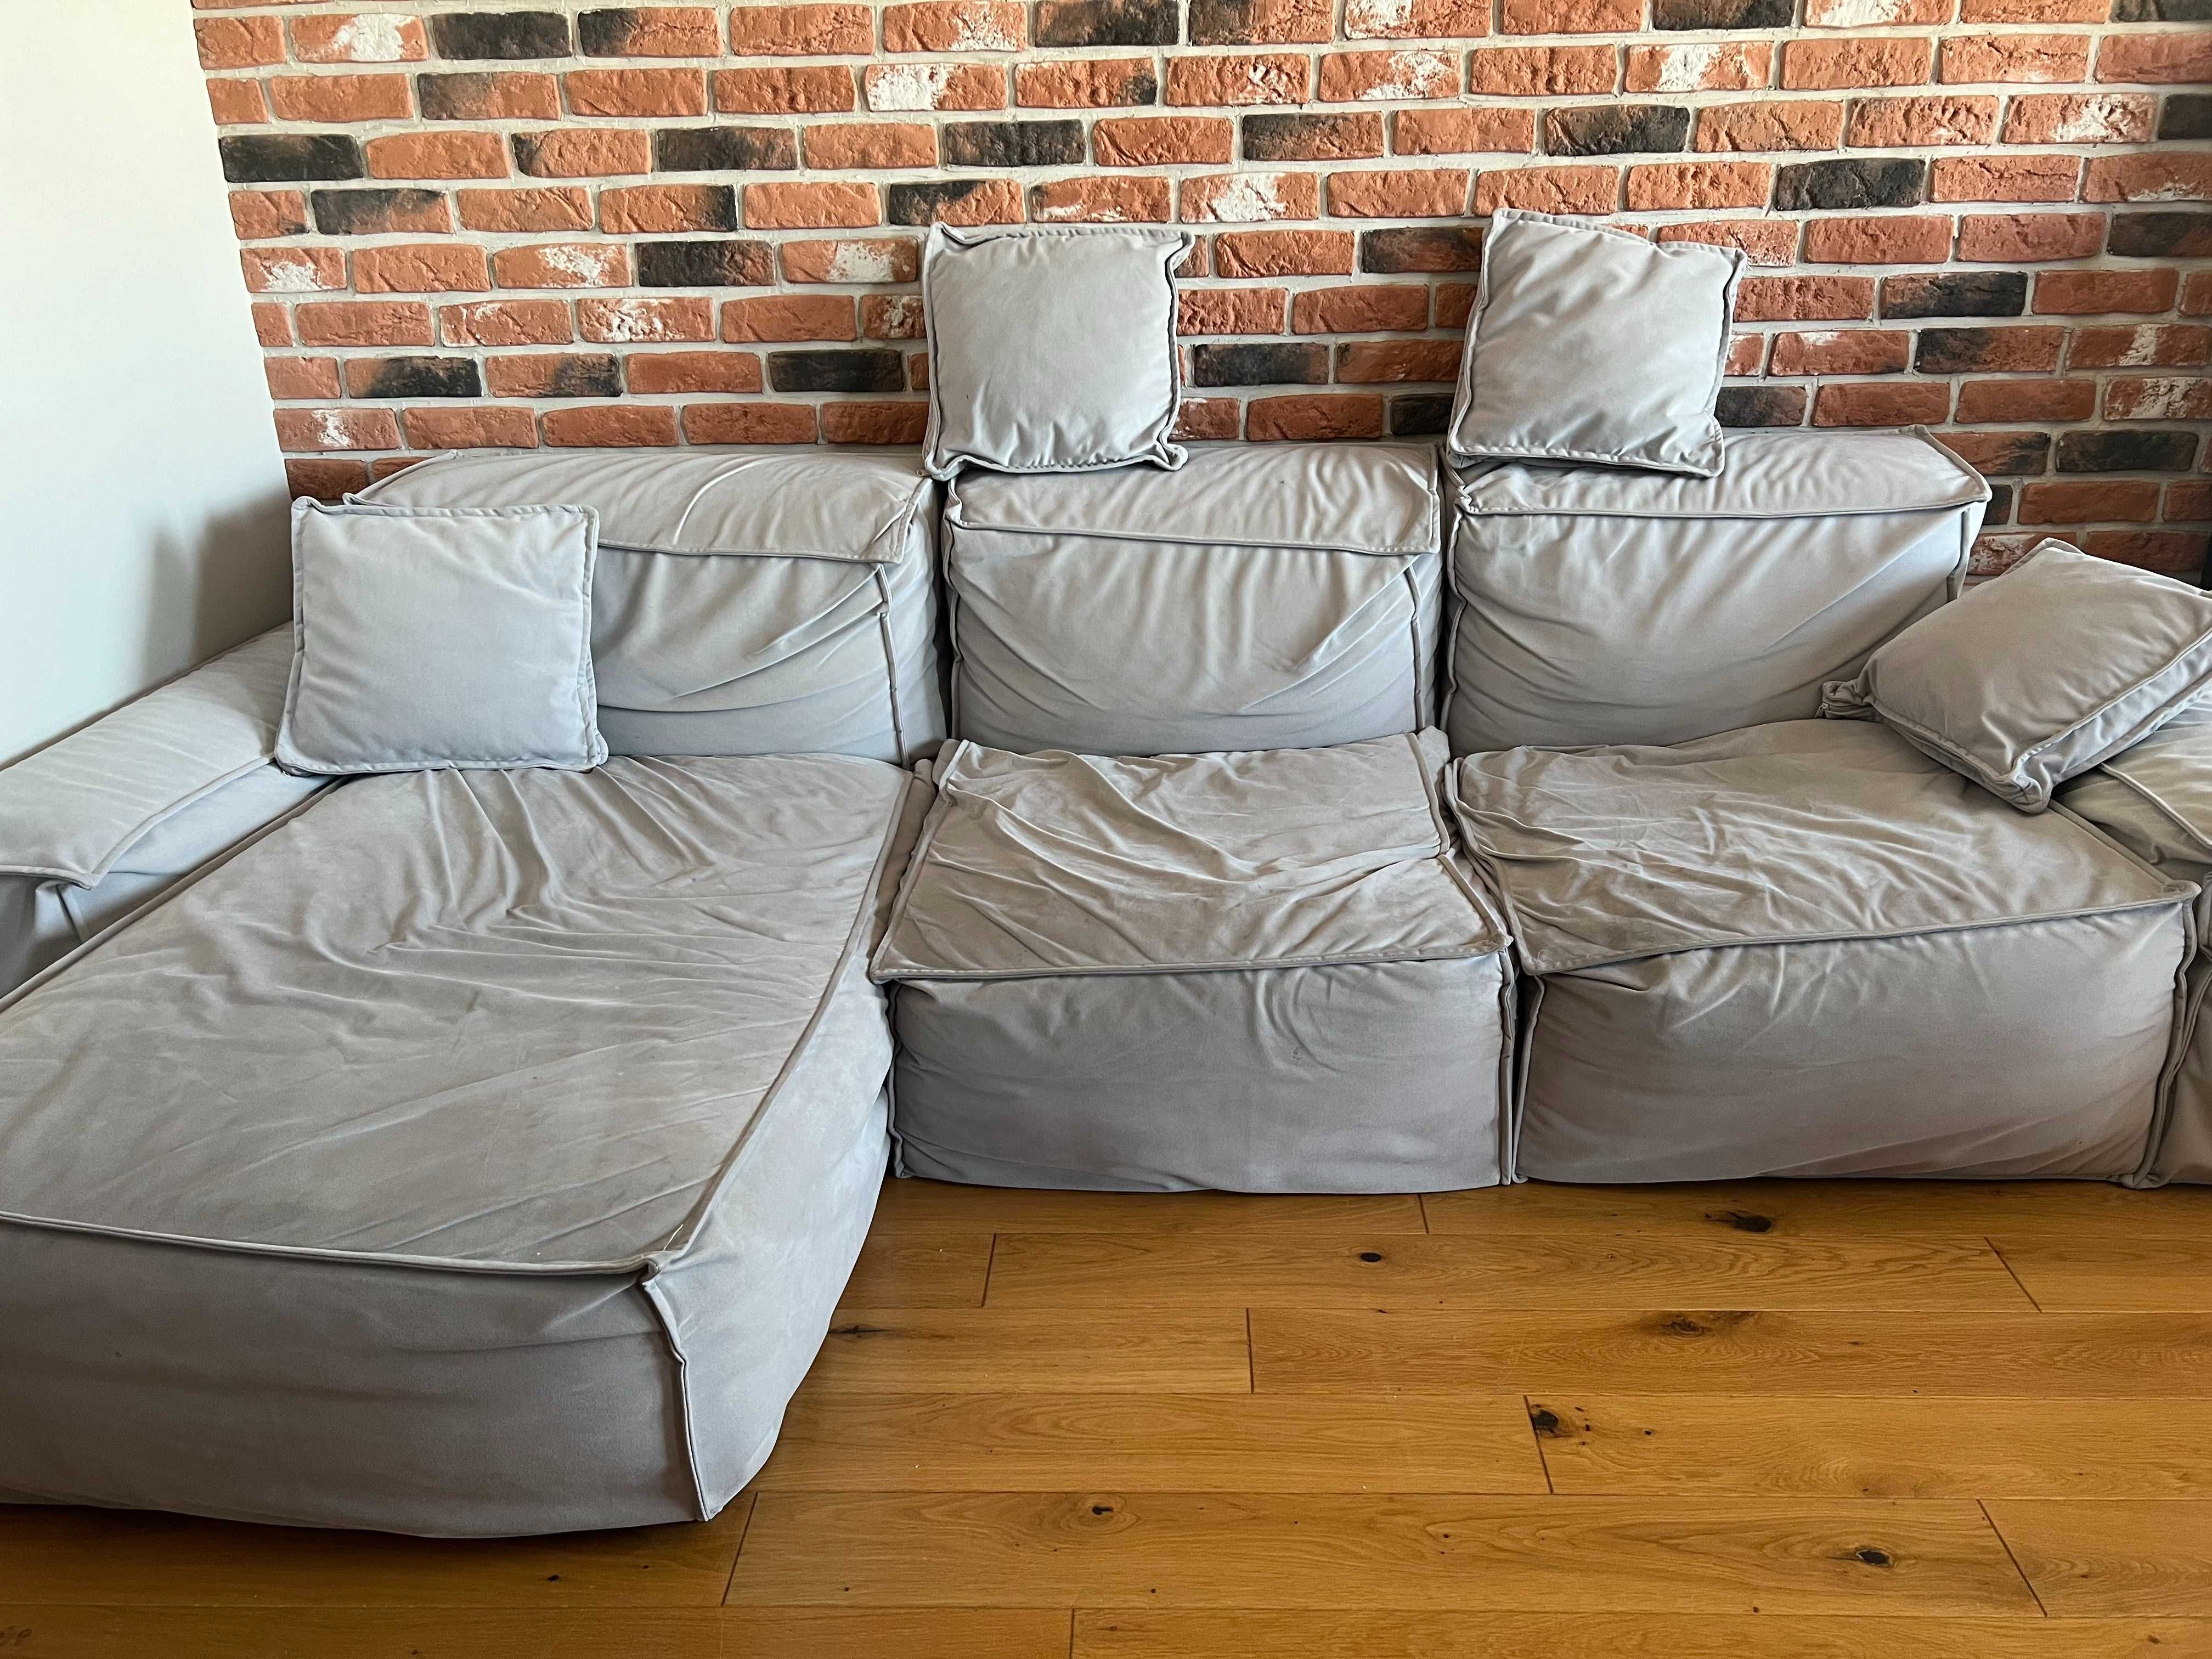 Naroznik Cushions (nierozkladany) marki Rosanero + 4 poduszki